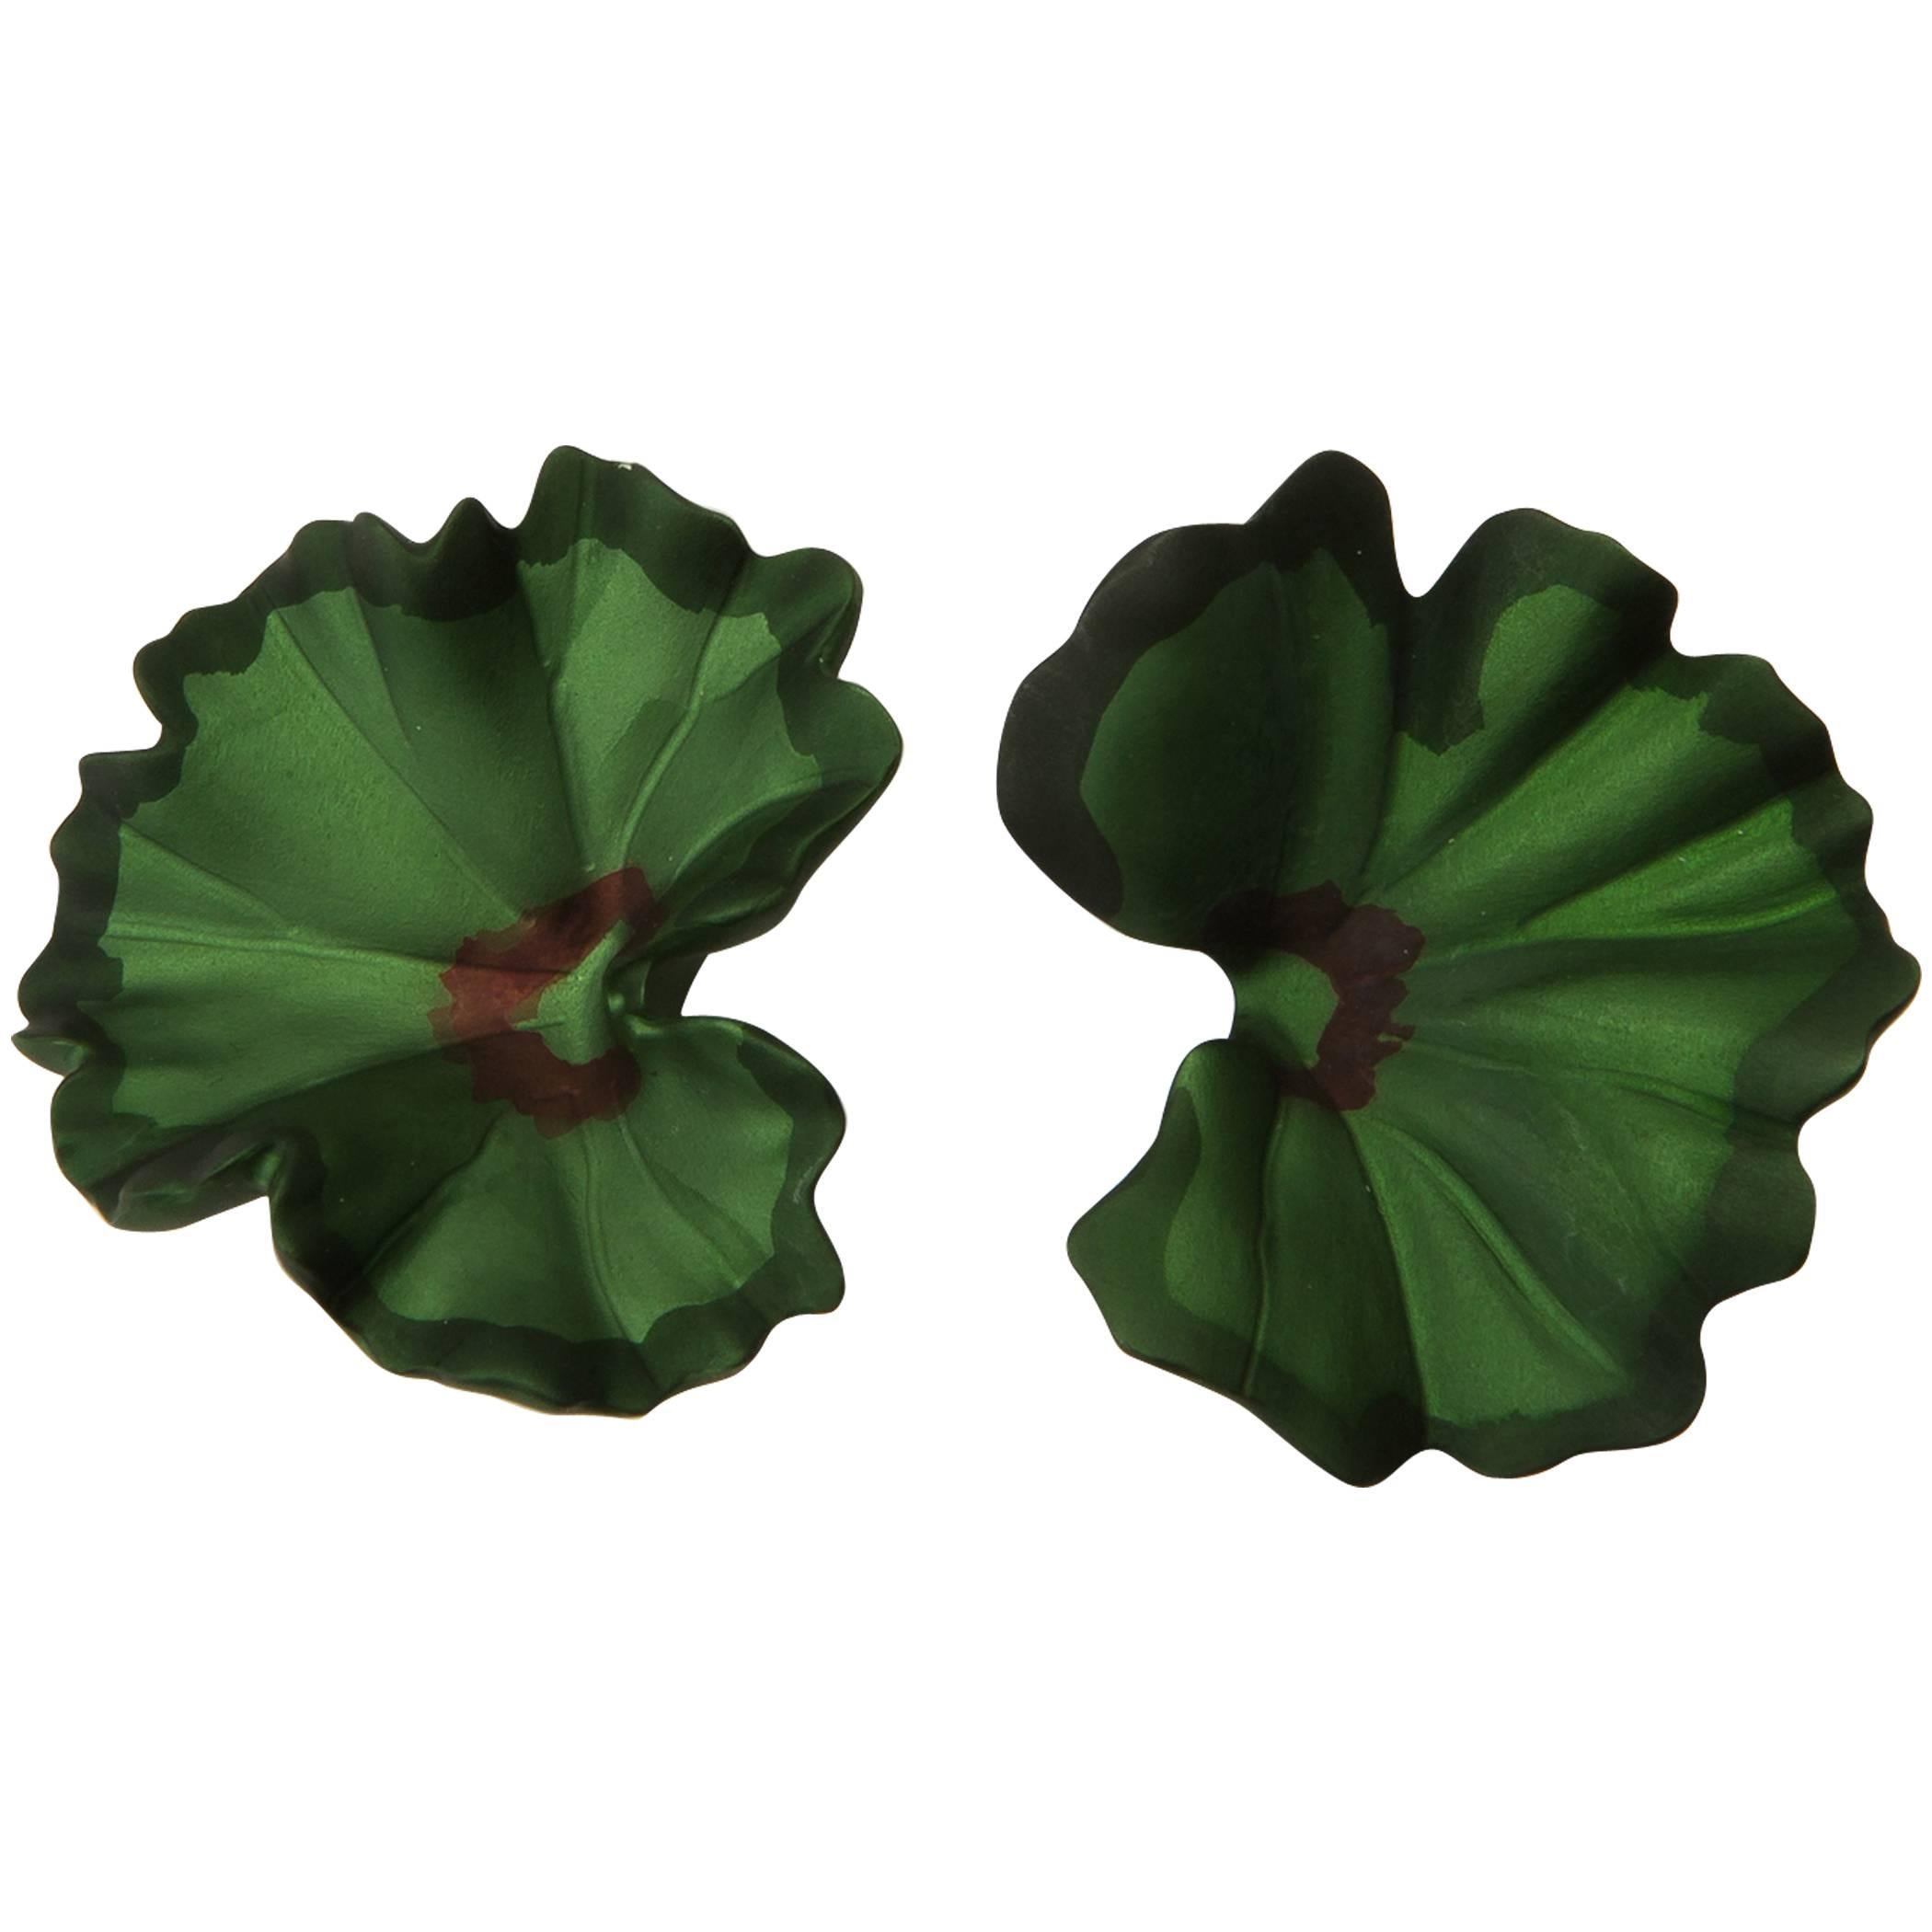 JAR Geranium Leaf Earrings